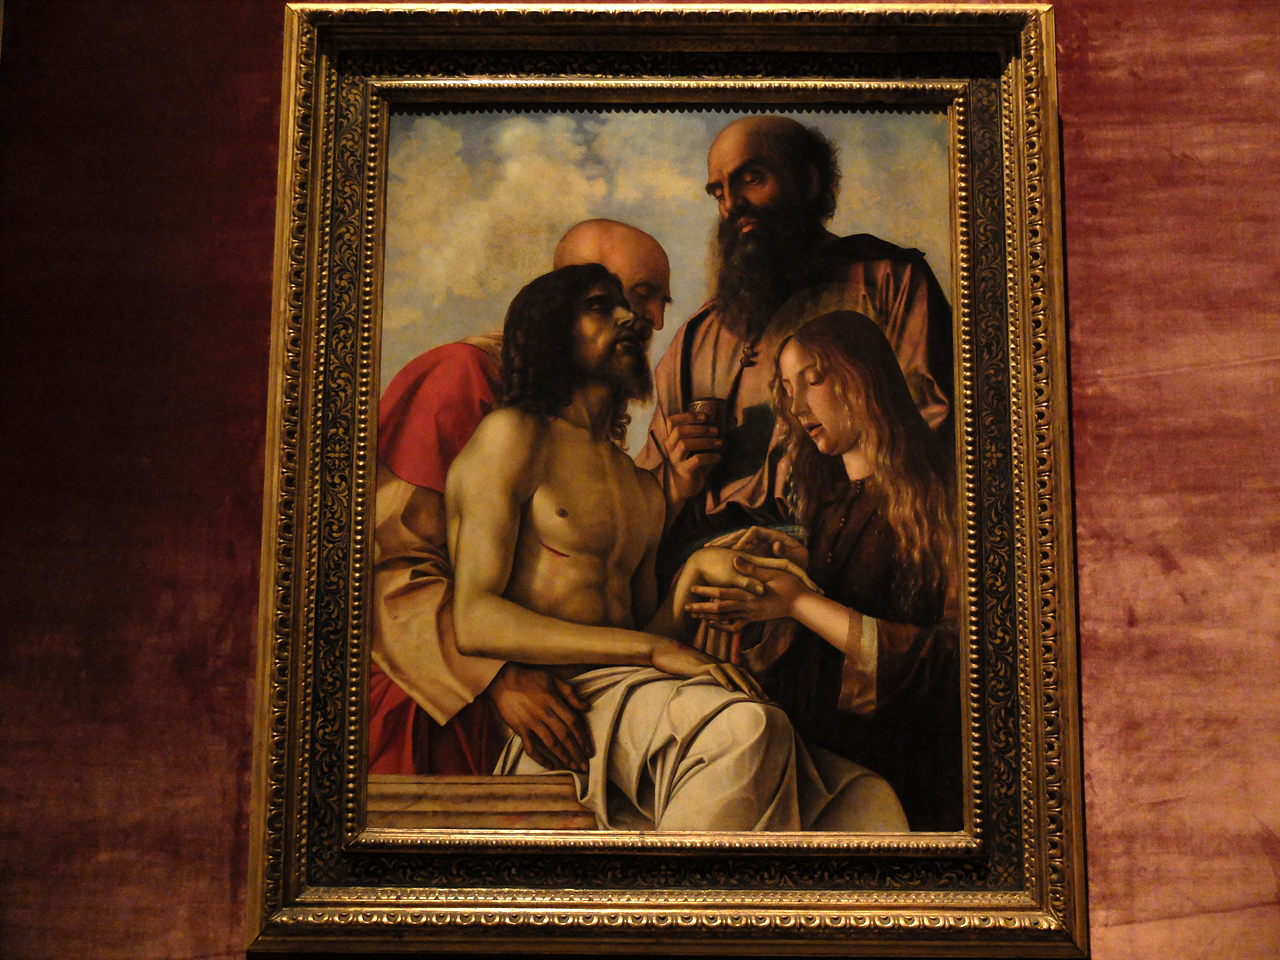 조반니 벨리니, <피에타>, 바티칸 박물관 회화관. 성모 마리아를 묘사하지 않은 이 작품은 지금까지 본 적 없는 구도의 피에타입니다.